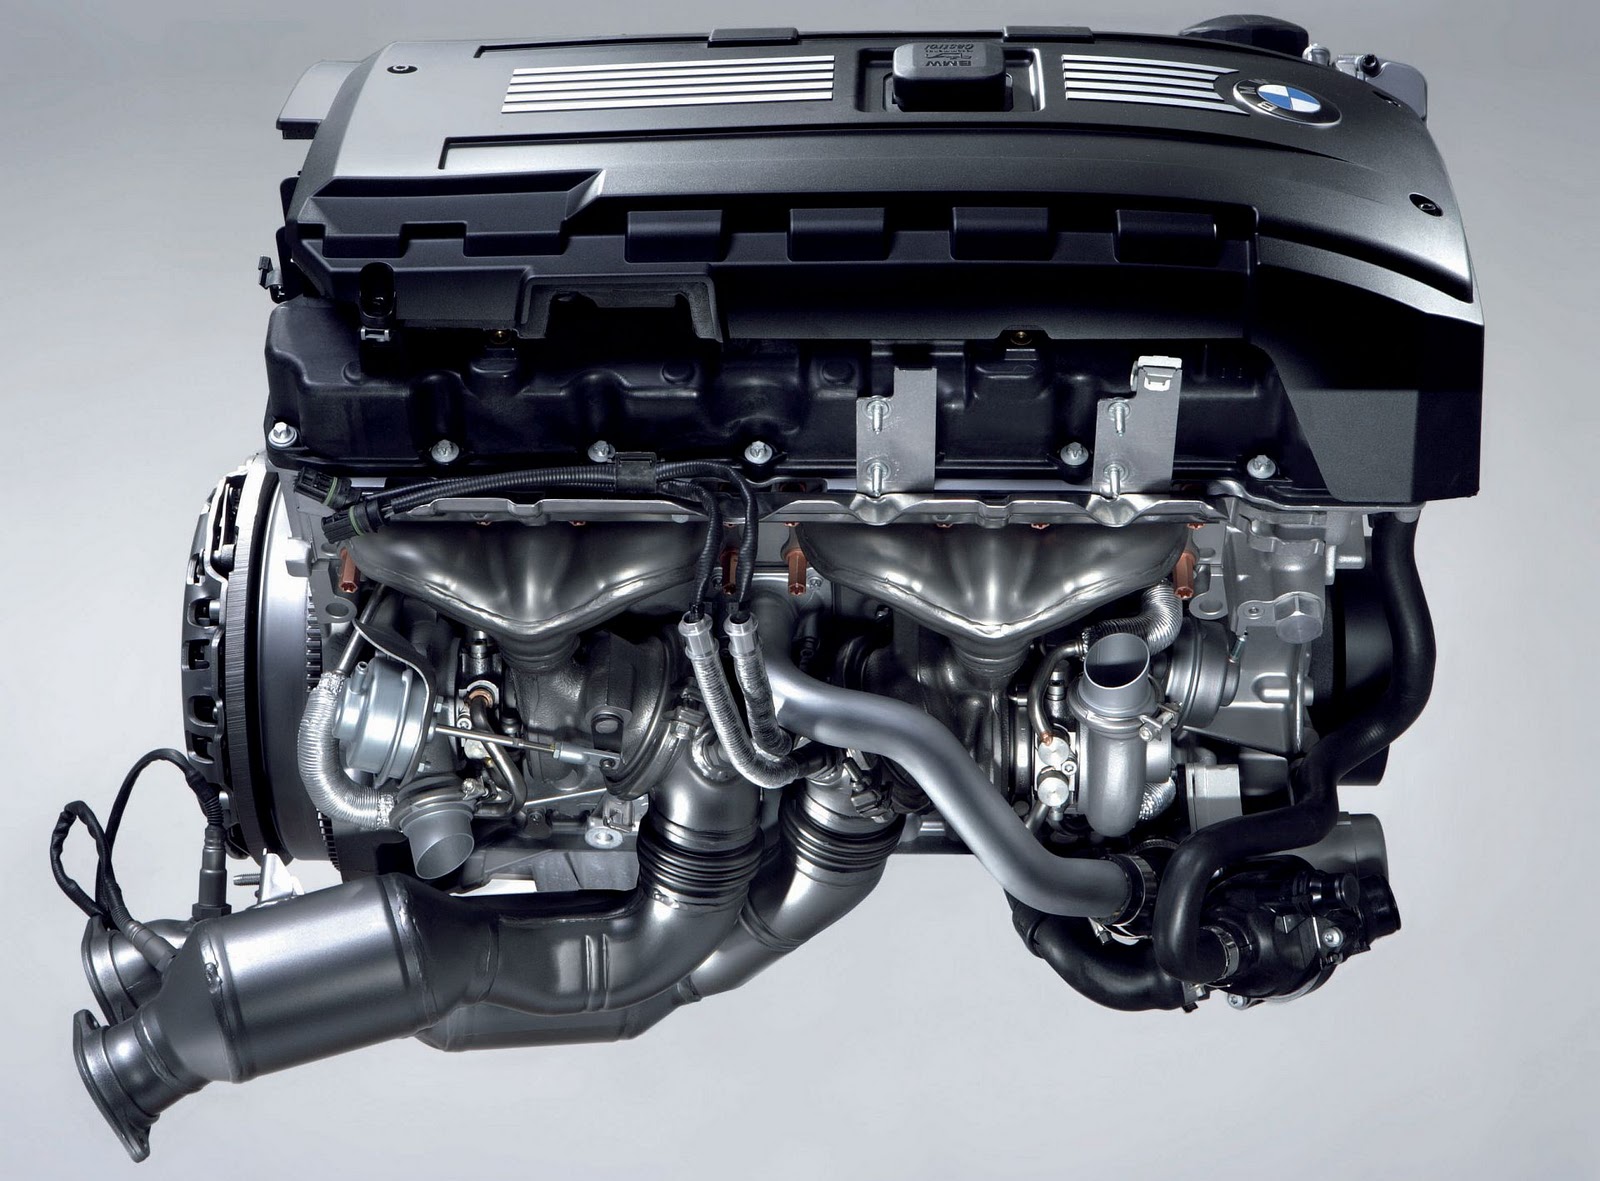 Bmw 335i turbo engine problems 2009 #1